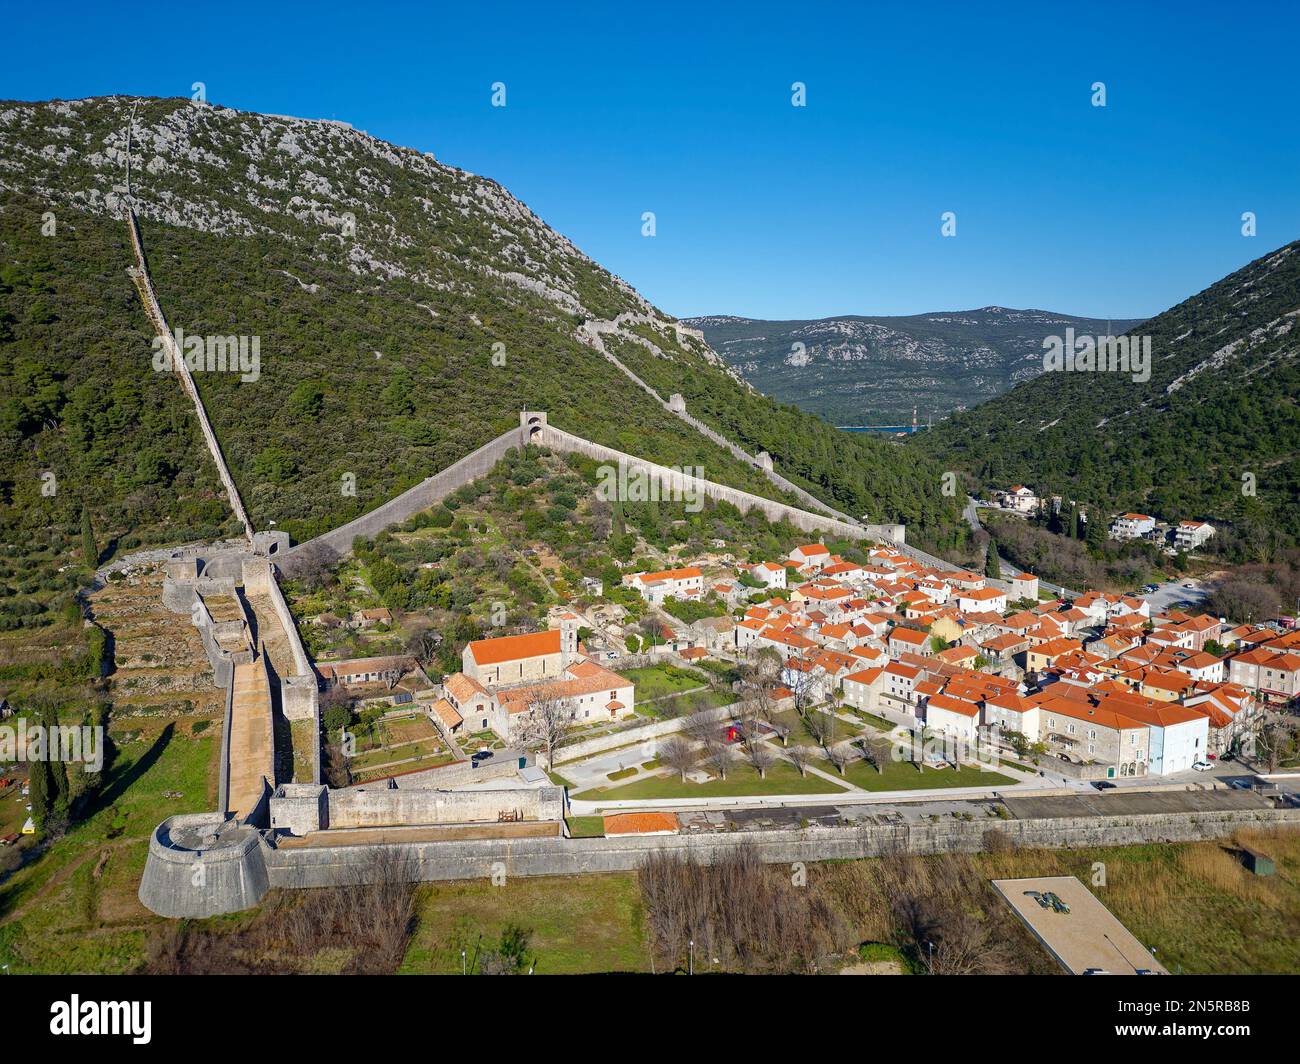 Vue aérienne sur les murs fortifiés de la ville de Ston en Croatie. Tourisme près de la mer Adriatique. Visites historiques. Banque D'Images